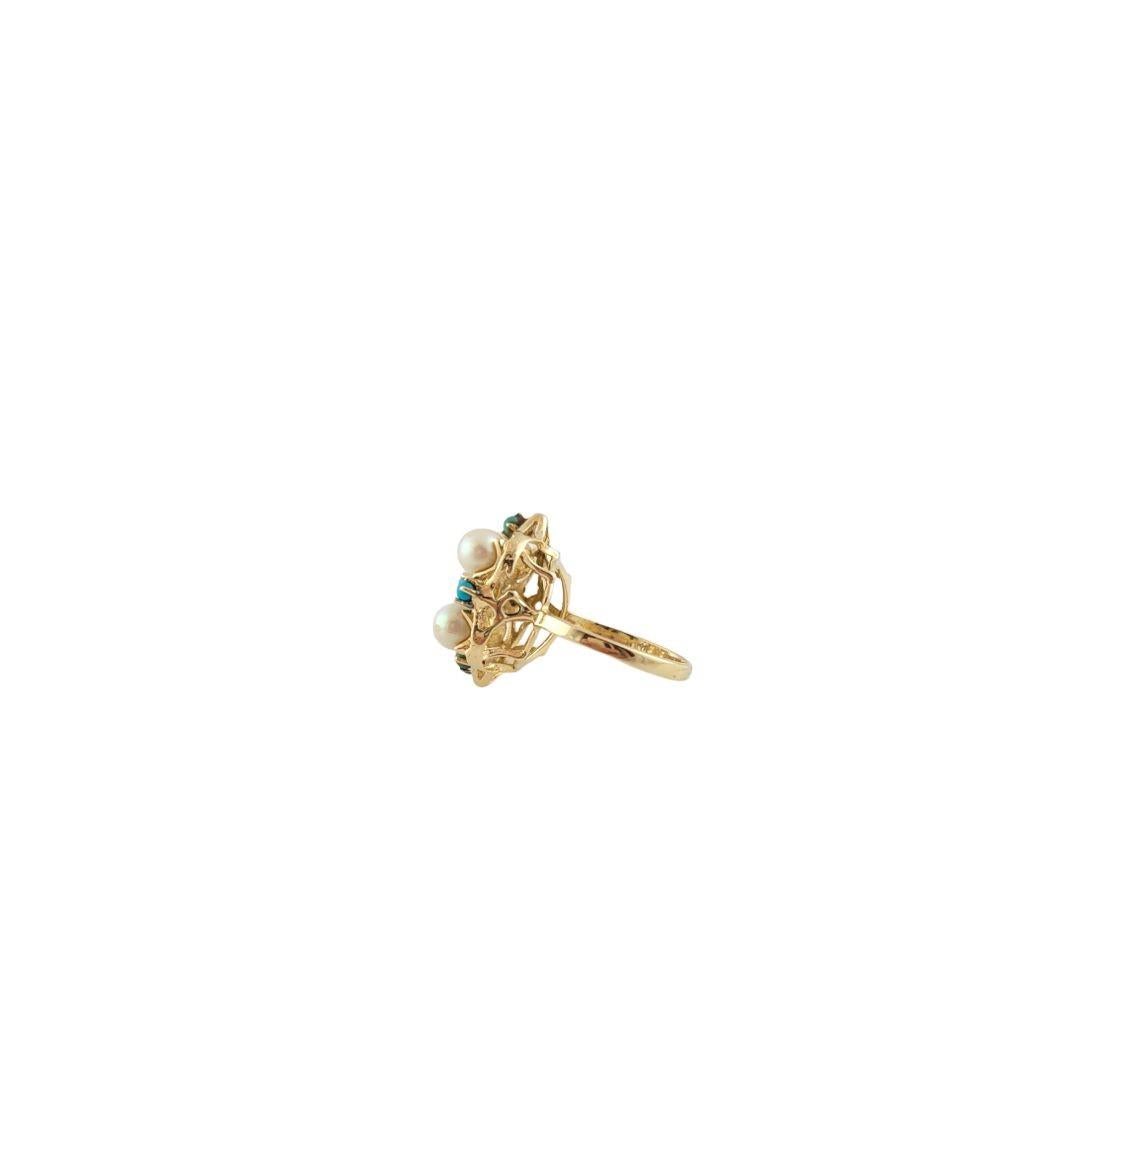 Dieser atemberaubende Ring besteht aus vier runden Perlen (je 5 mm) und fünf runden Türkissteinen, die in wunderschön detailliertes 14-karätiges Gelbgold gefasst sind.

Breite: 21 mm.  Schaft: 2 mm.

Ringgröße:  7.25

Gewicht:  5.4 gr./  3,4